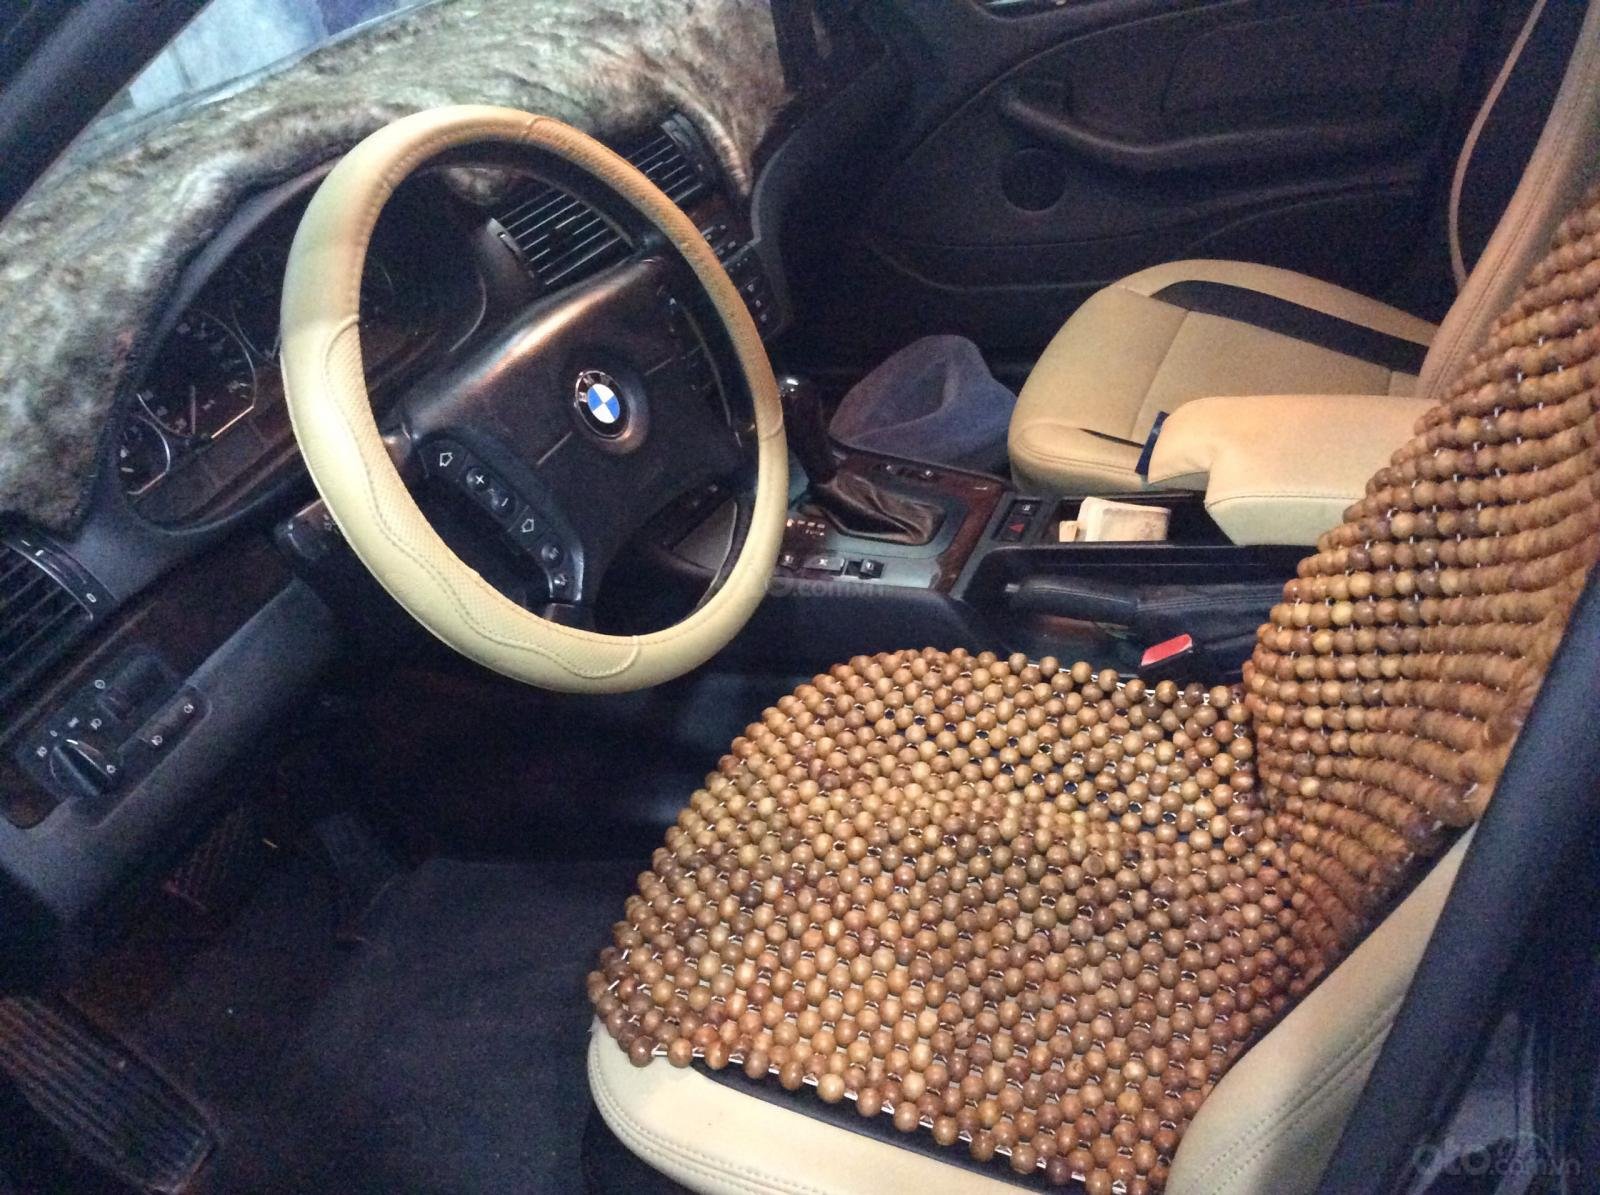 Chủ xe lên đời VinFast, BMW 325i 2005 được bán giá bèo chỉ 250 triệu đồng - Ảnh 2.